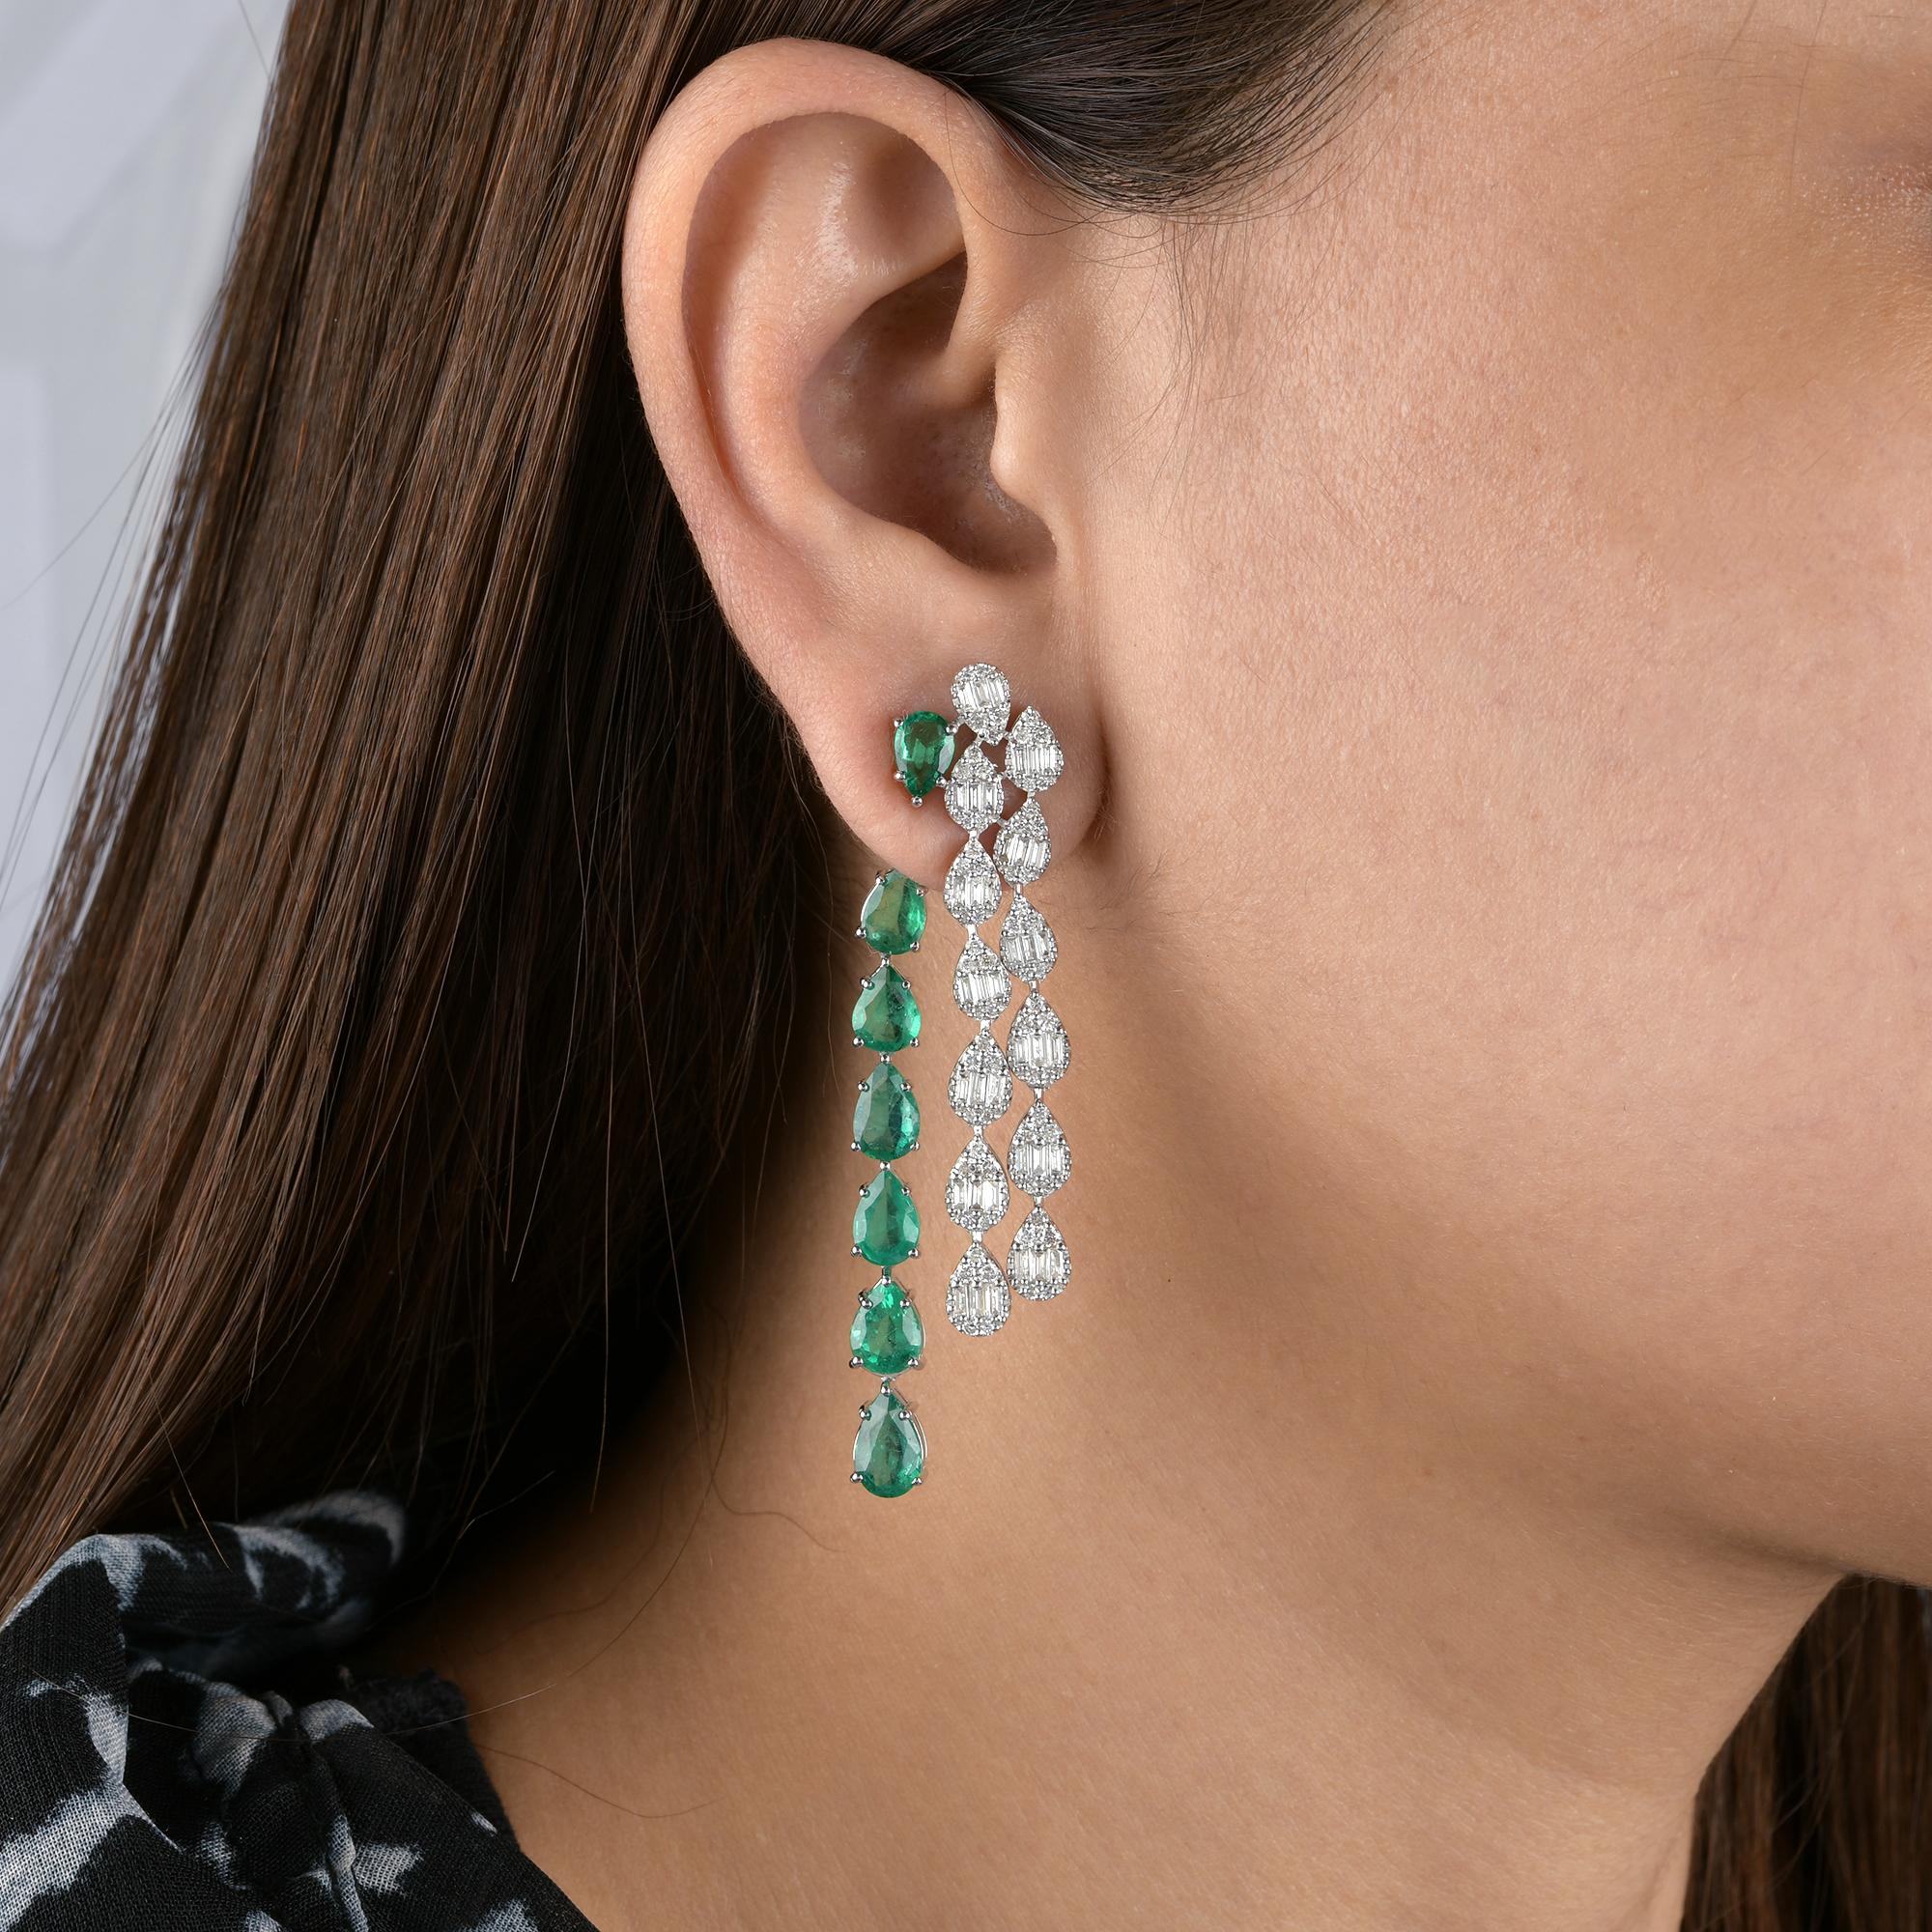 Pear Cut Pear Zambian Emerald Gemstone Jacket Earrings Diamond 18k White Gold Jewelry For Sale